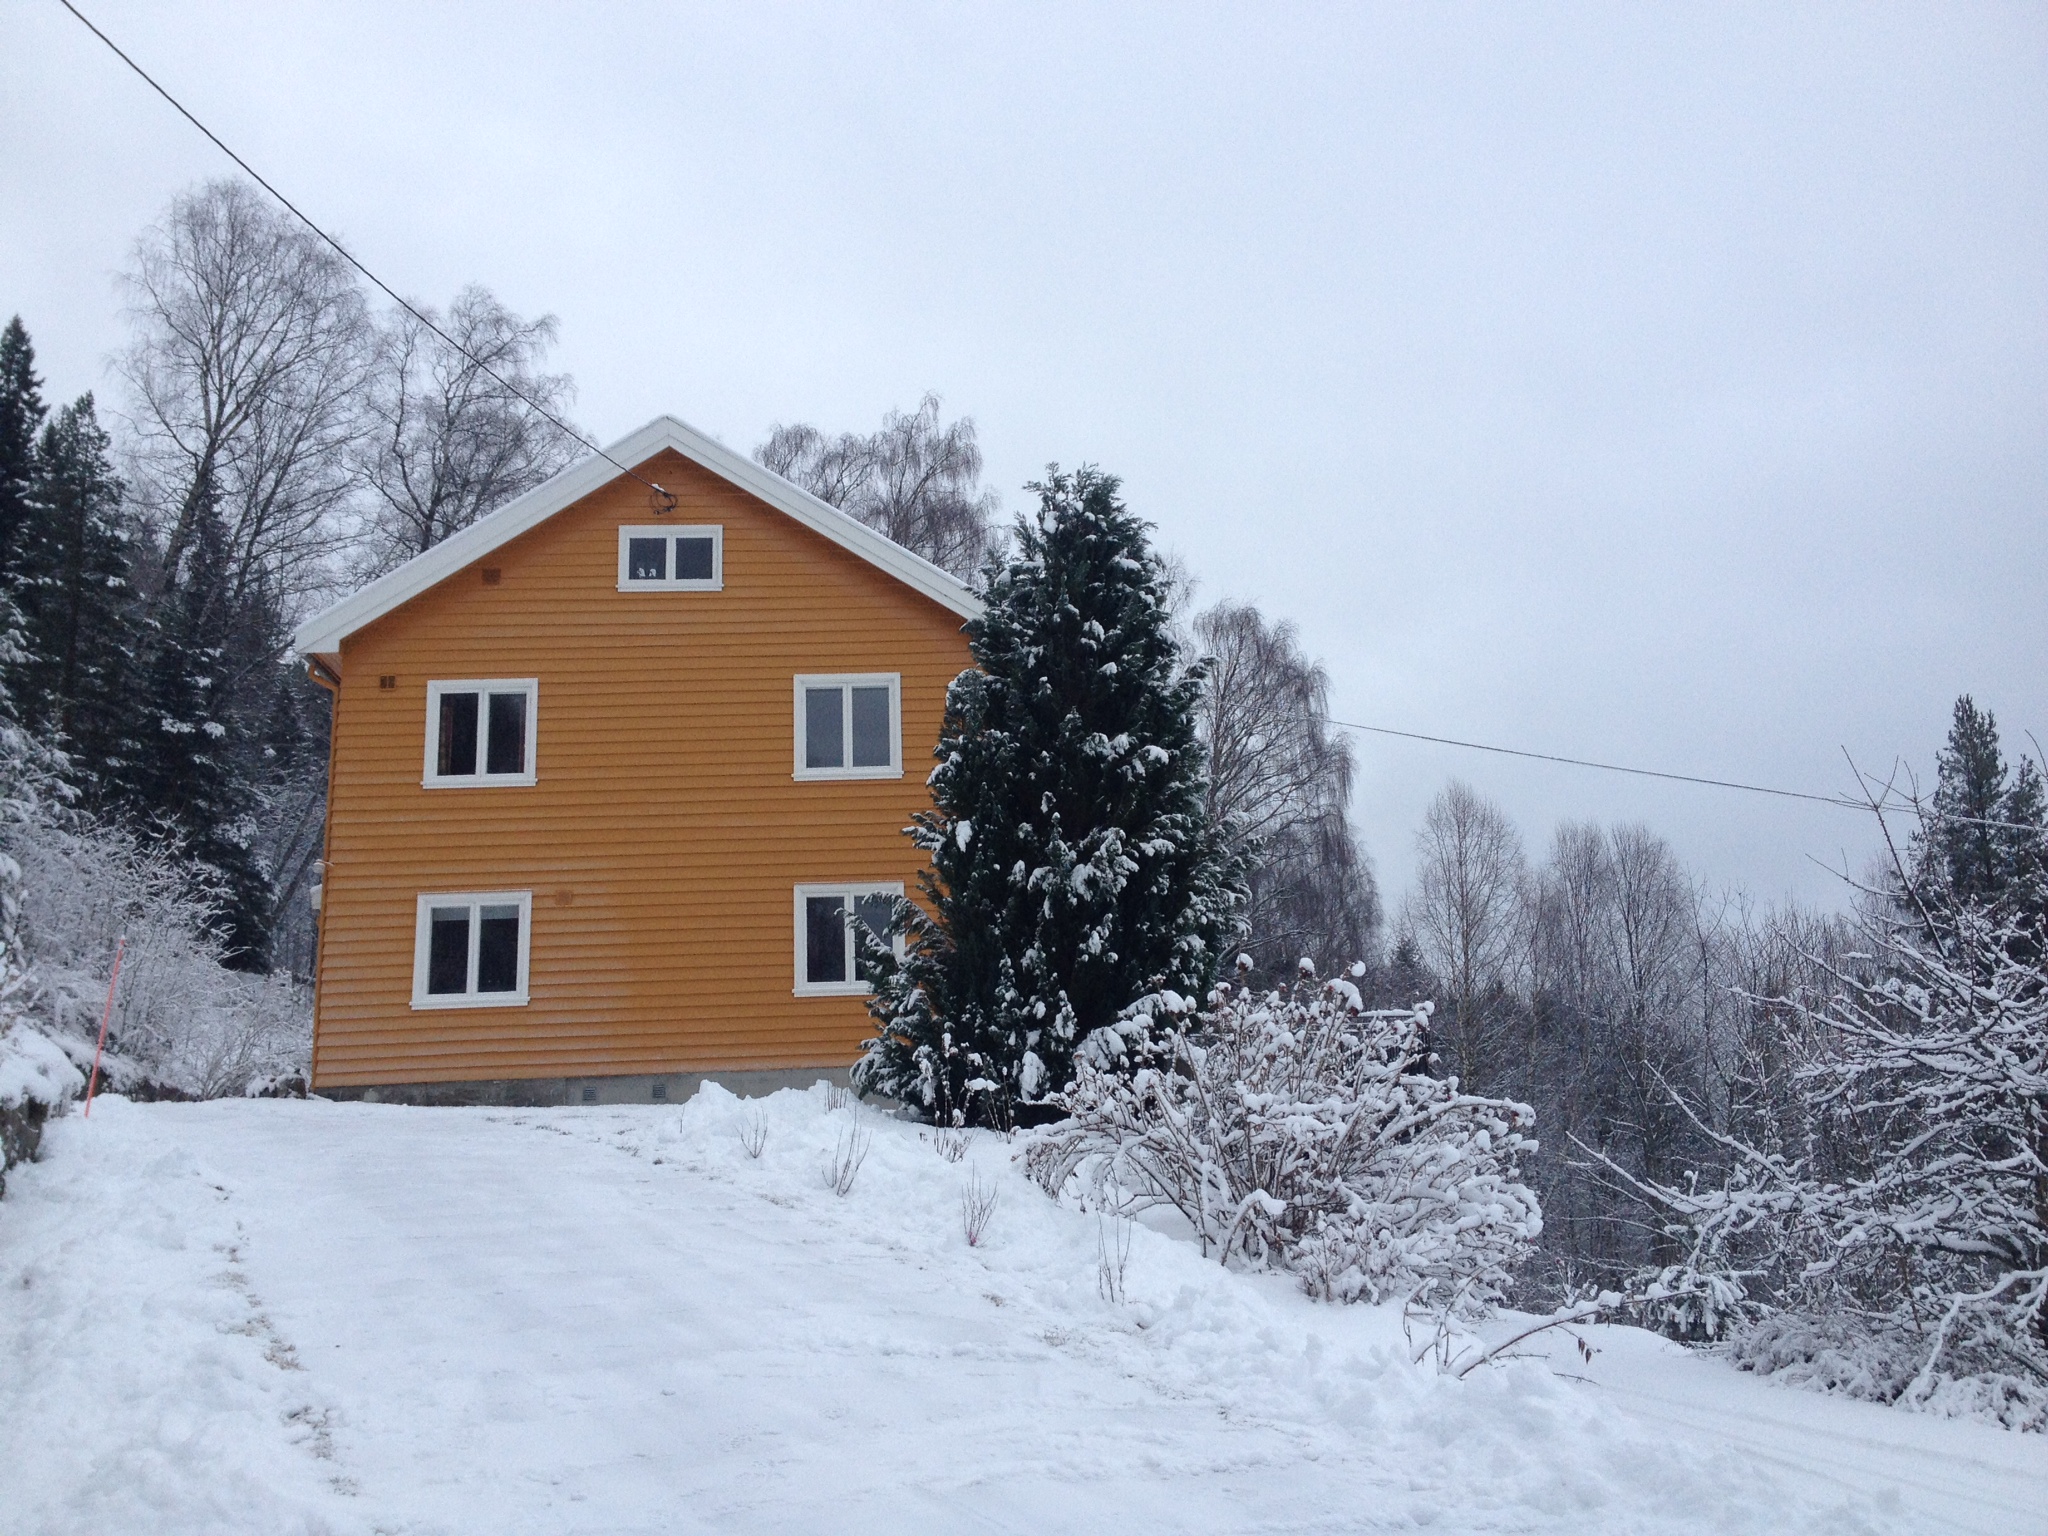 Ons huis in de eerste sneeuw van december